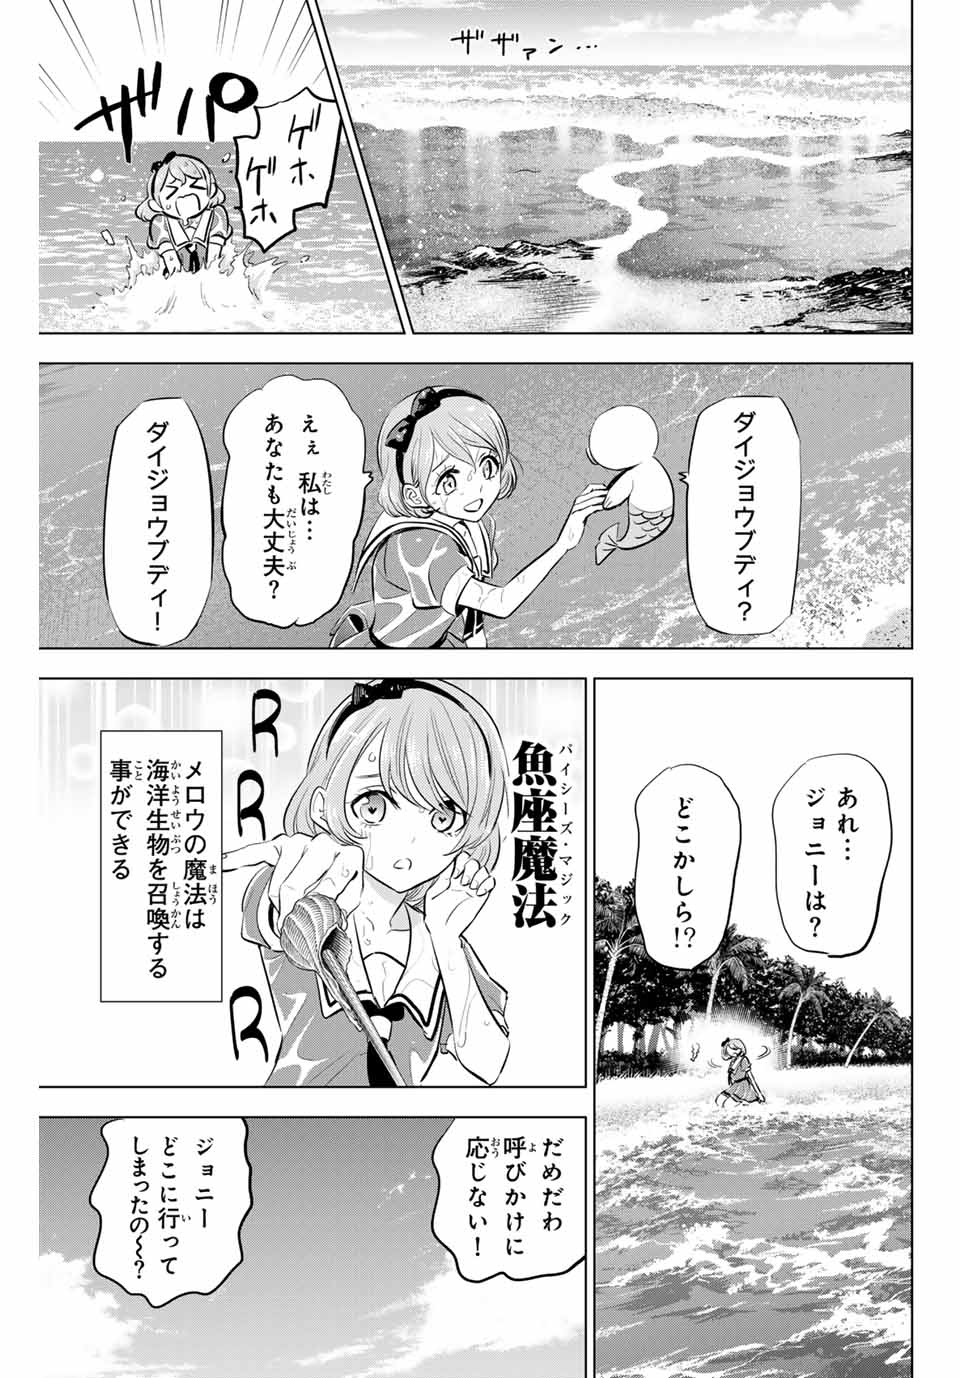 Kuroneko to Majo no Kyoushitsu - Chapter 48 - Page 3